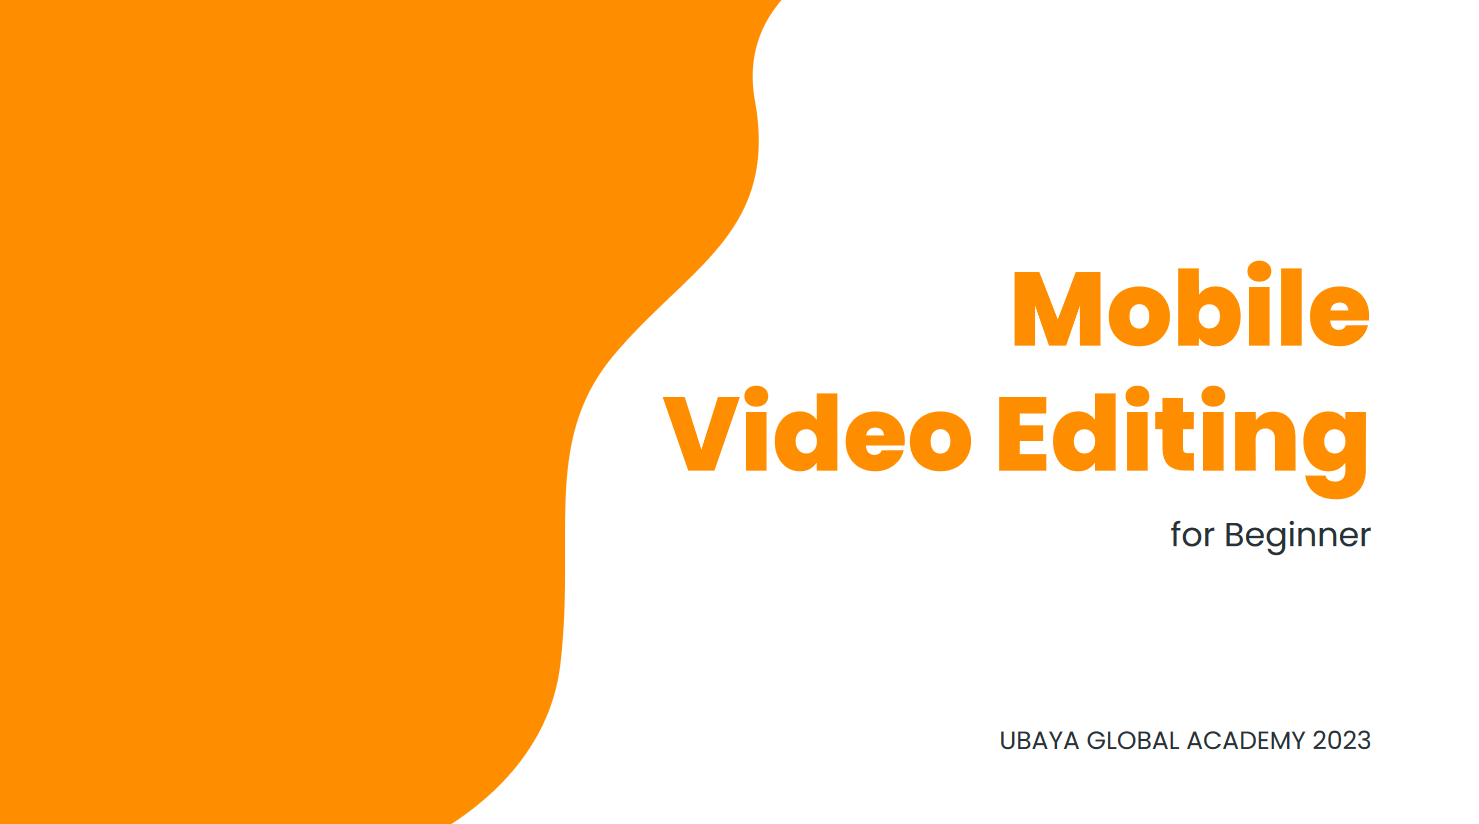 Mobile Video Editing for Beginner